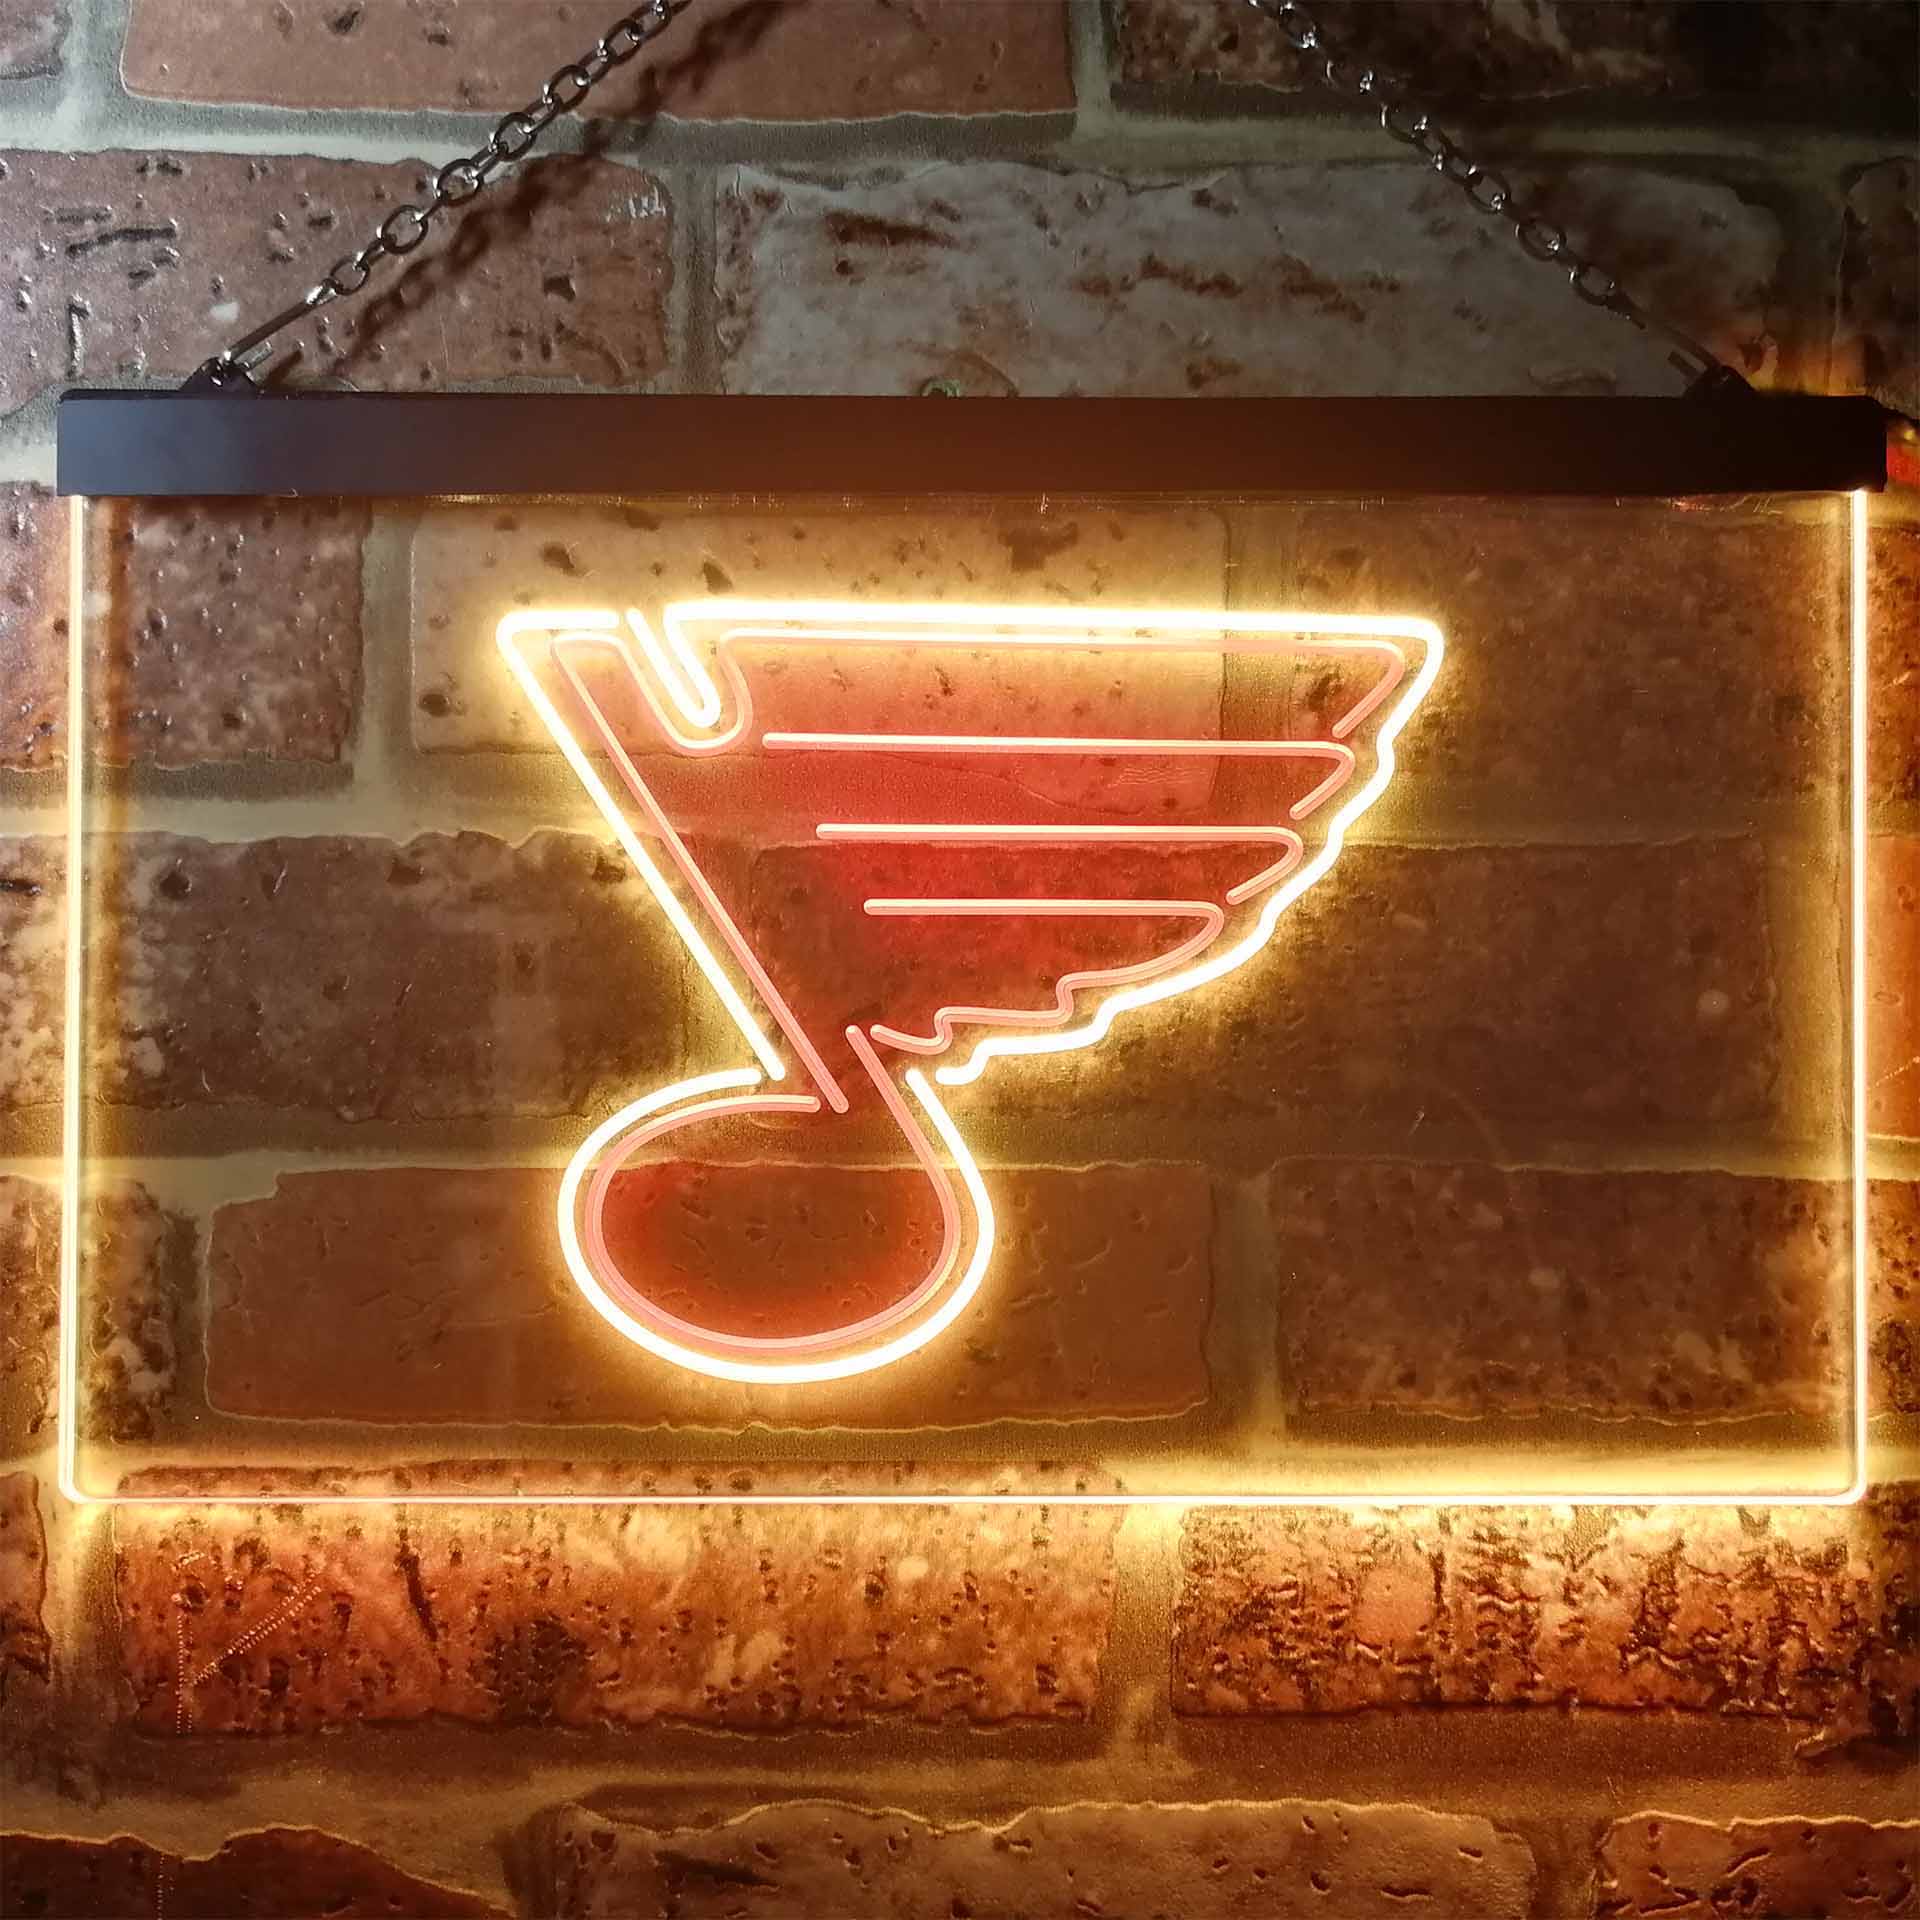 St Louis Blues LED Neon Sign